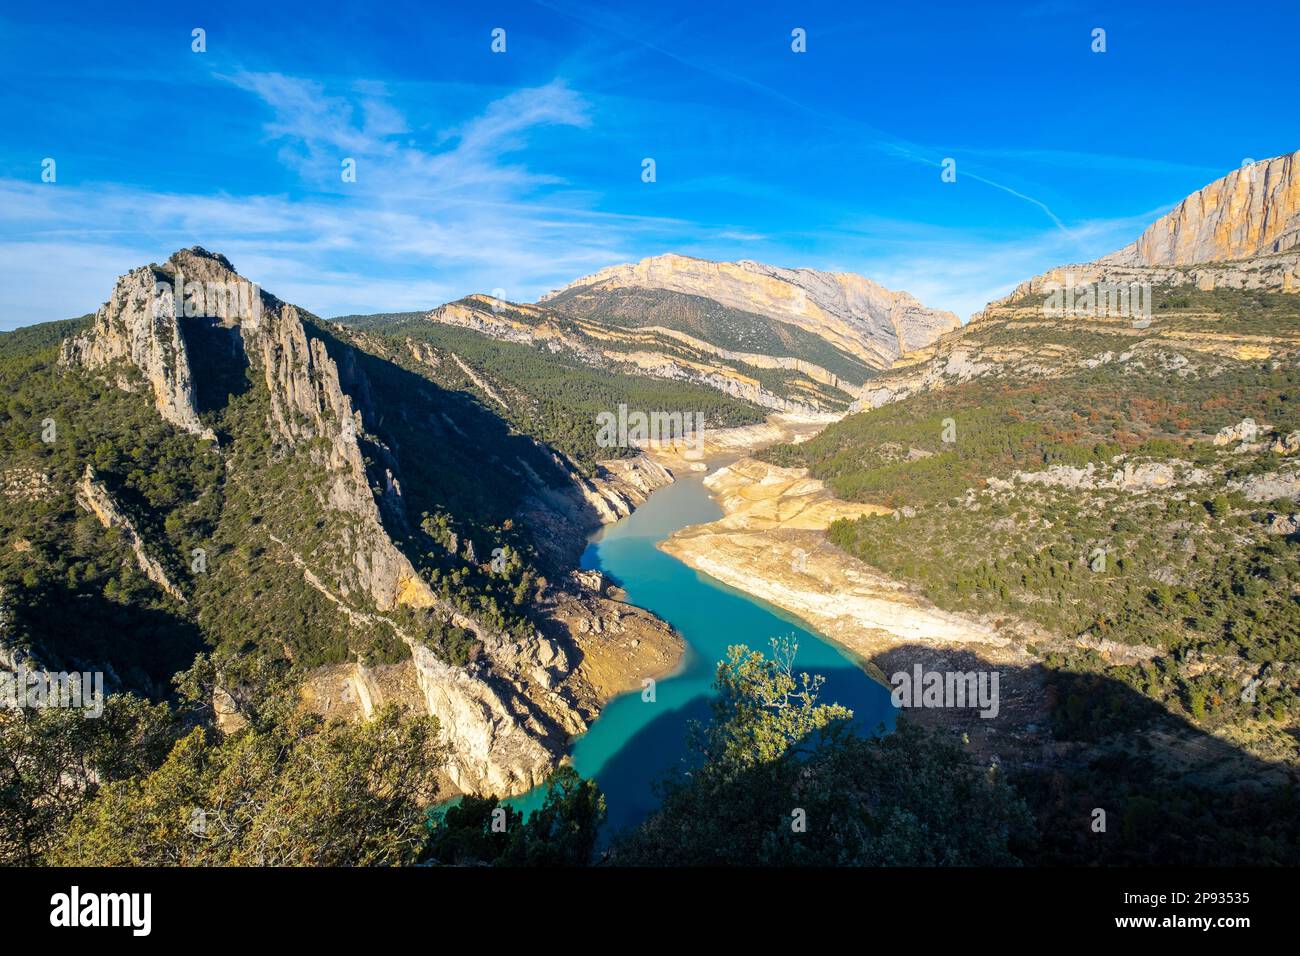 Panoramablick auf den Fluss Noguera Ribagorzana und die Montrebei-Schlucht im Naturschutzgebiet Montsec in der Provinz Lleida in Katalonien, Spanien Stockfoto